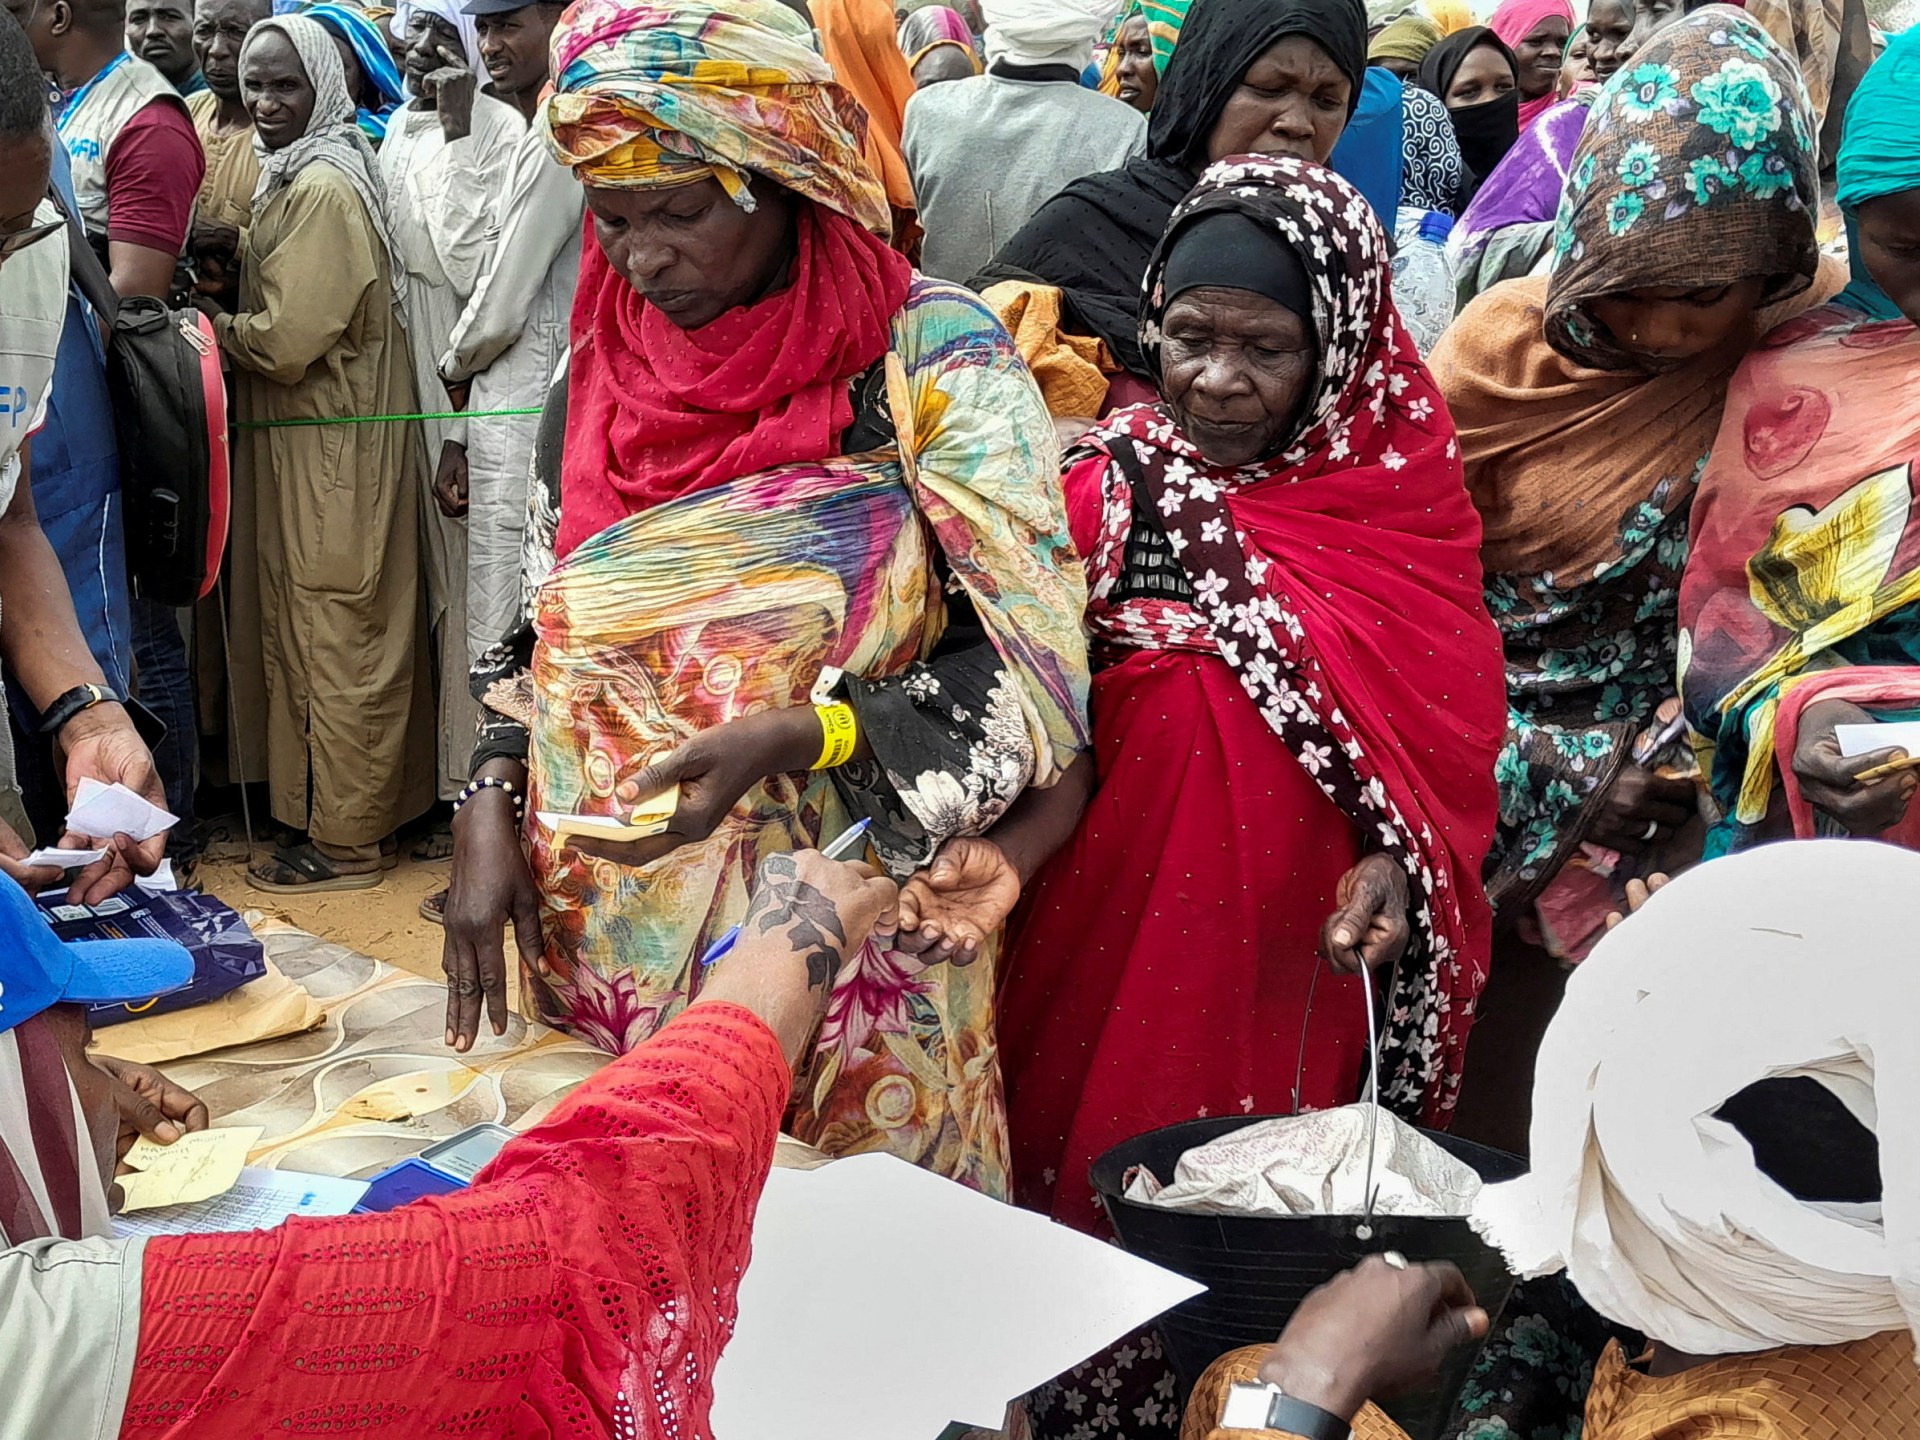 Kondisi Menyedihkan, Masa Depan Tidak Pasti bagi Pengungsi Sudan di Chad |  Berita